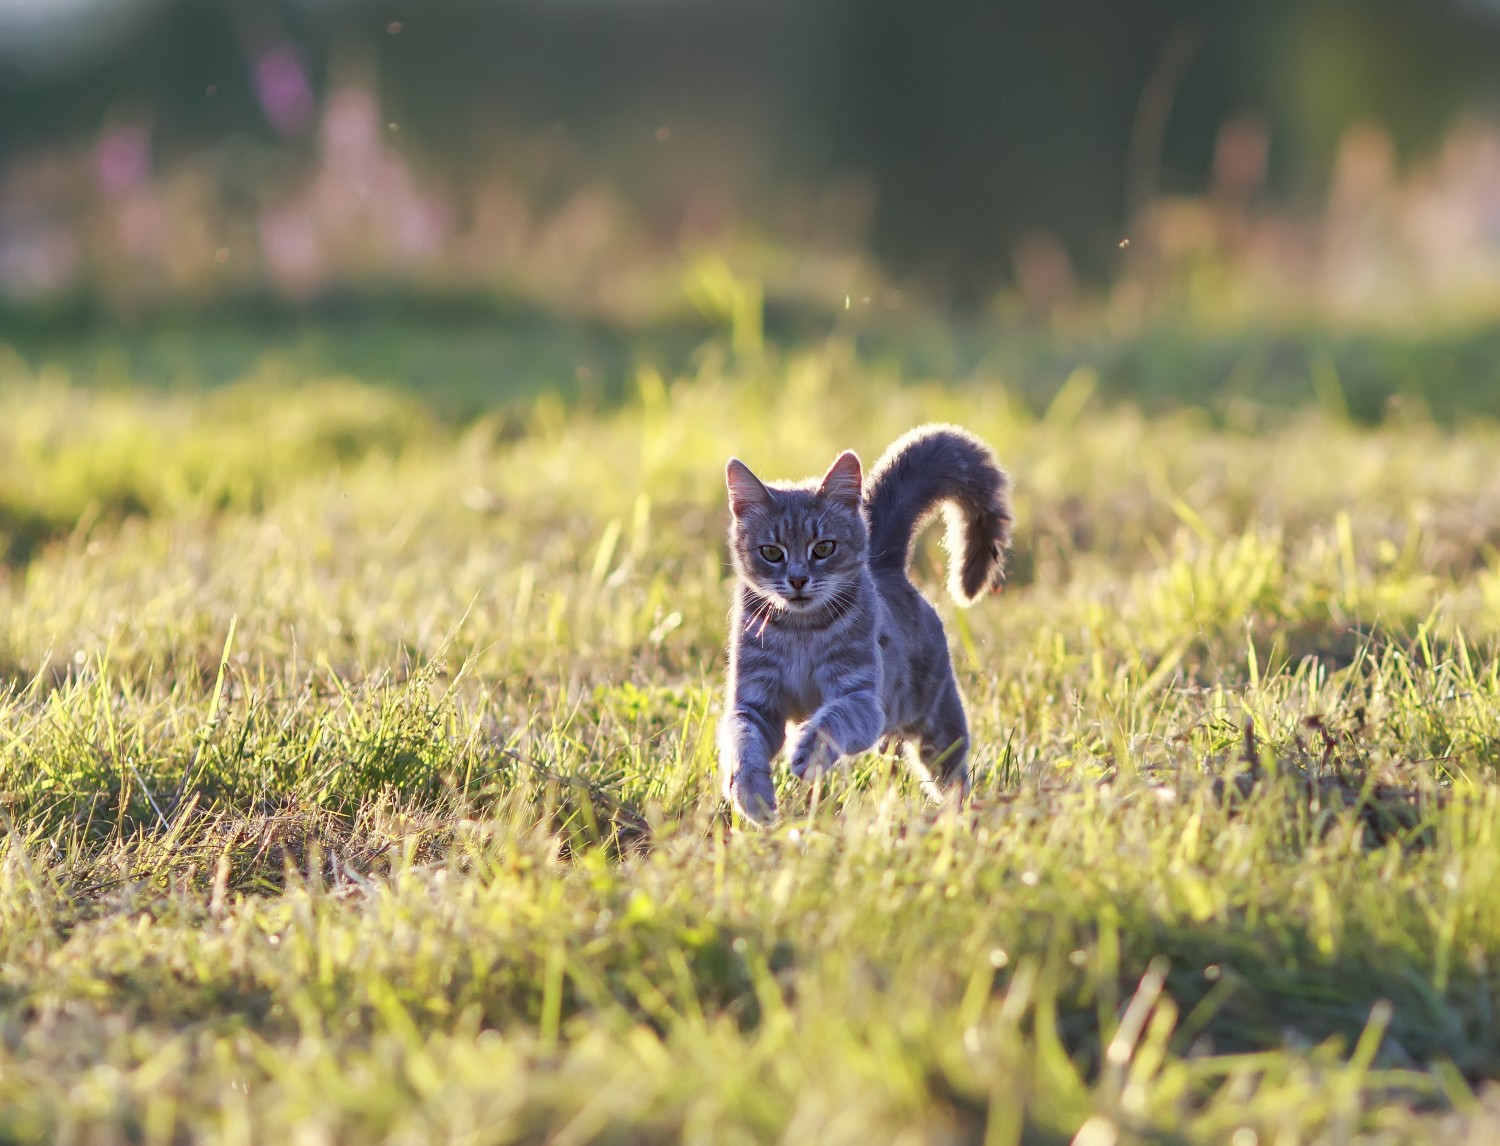 Cat in a Field